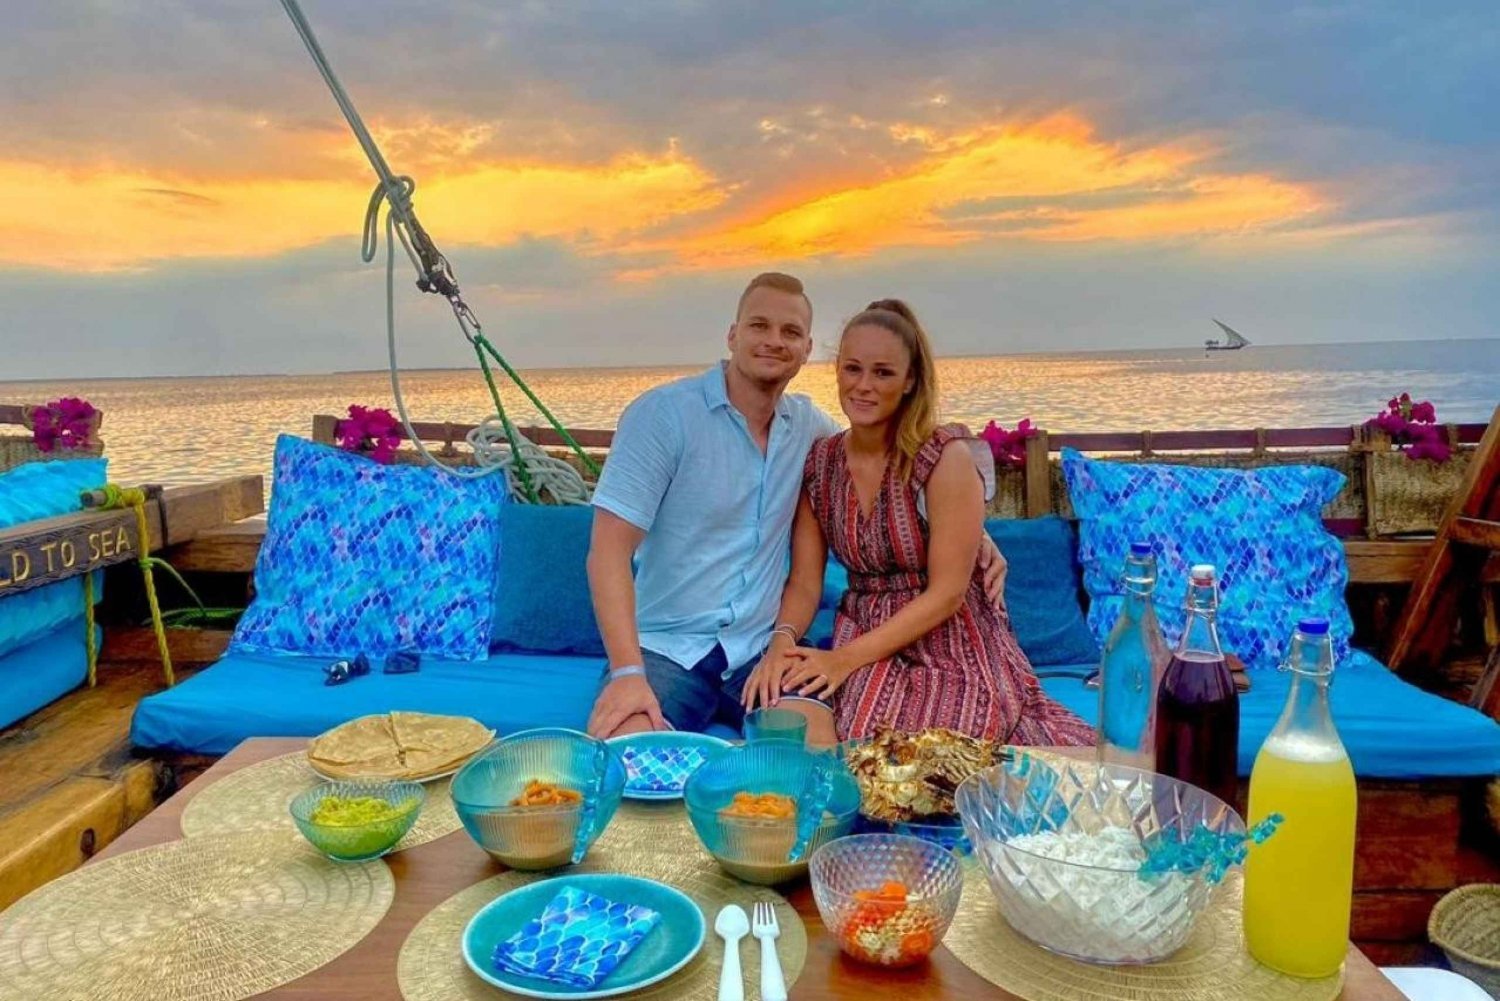 Zanzibar: Crociera romantica al tramonto con cena